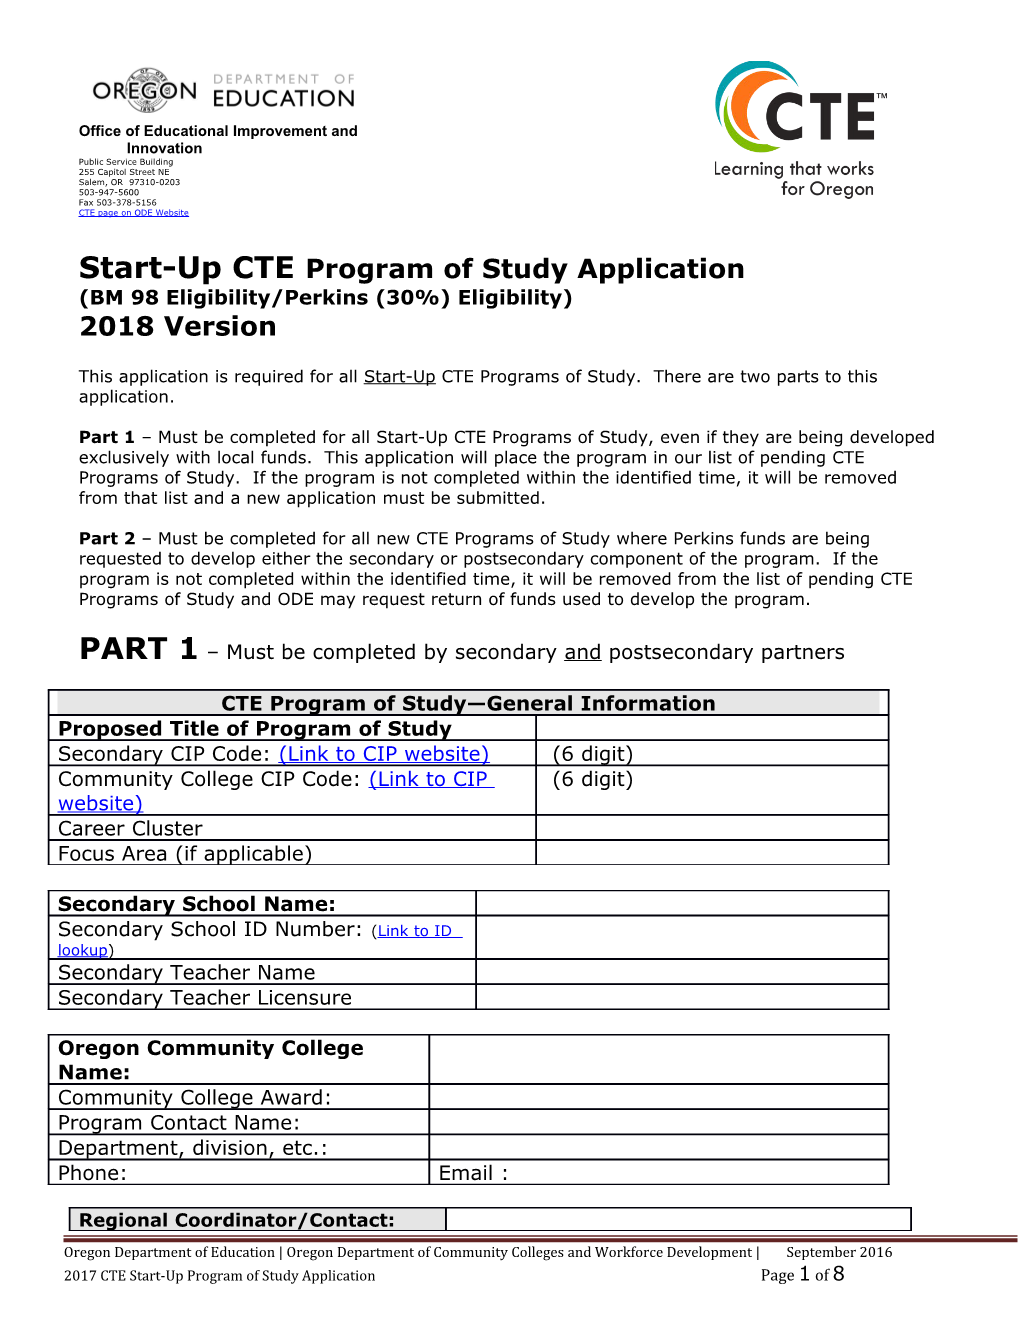 Application for New CTE Program of Study s2